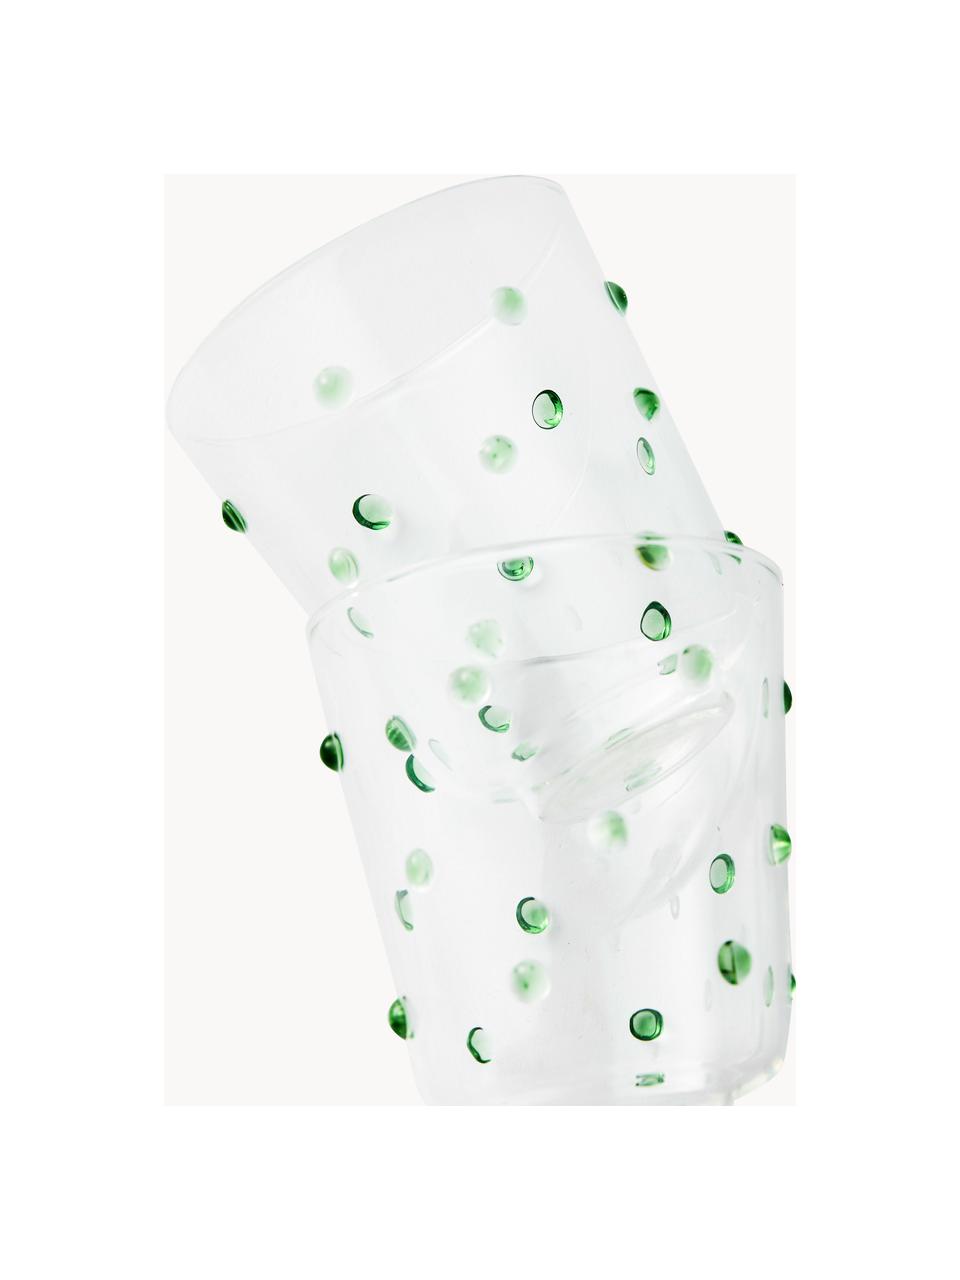 Szklanka ze szkła dmuchanego Nob, 2 szt., Szkło borokrzemowe, dmuchane, Transparentny, zielony, Ø 9 x W 10 cm, 300 ml